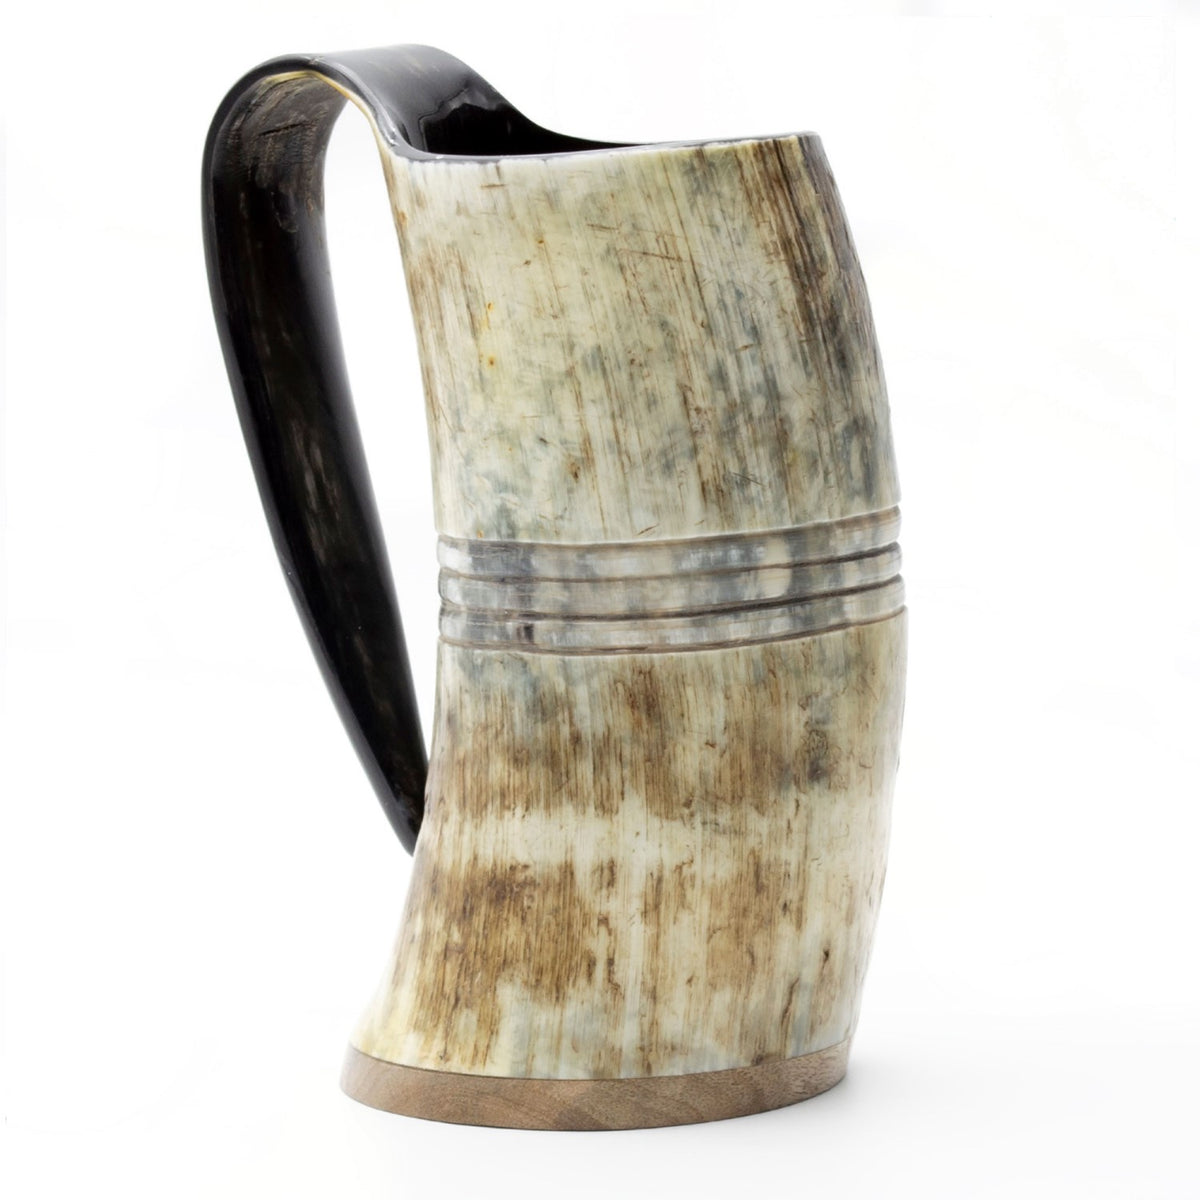 Viking Horn Tankard Mug